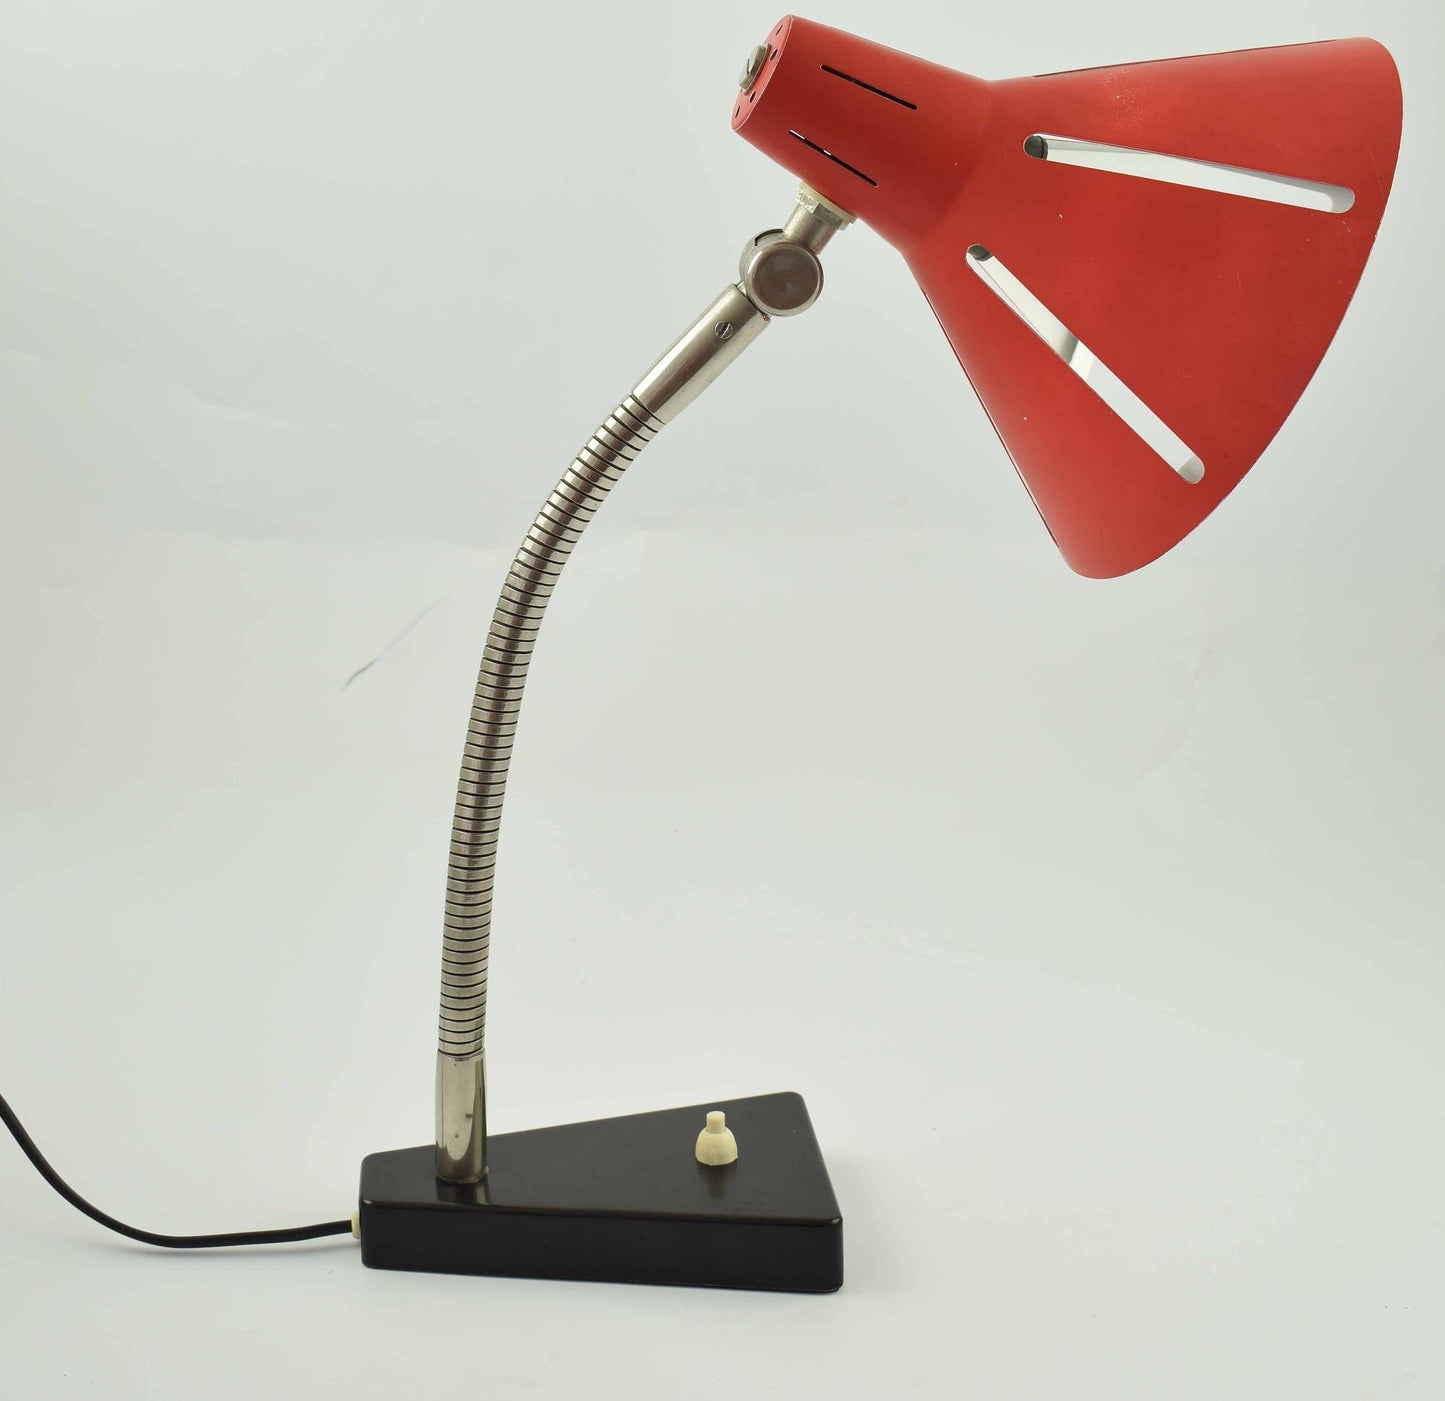 Hala zonneserie, sun serie, tafellamp absoluut geweldige klassieke dutch design bureaulamp van hala